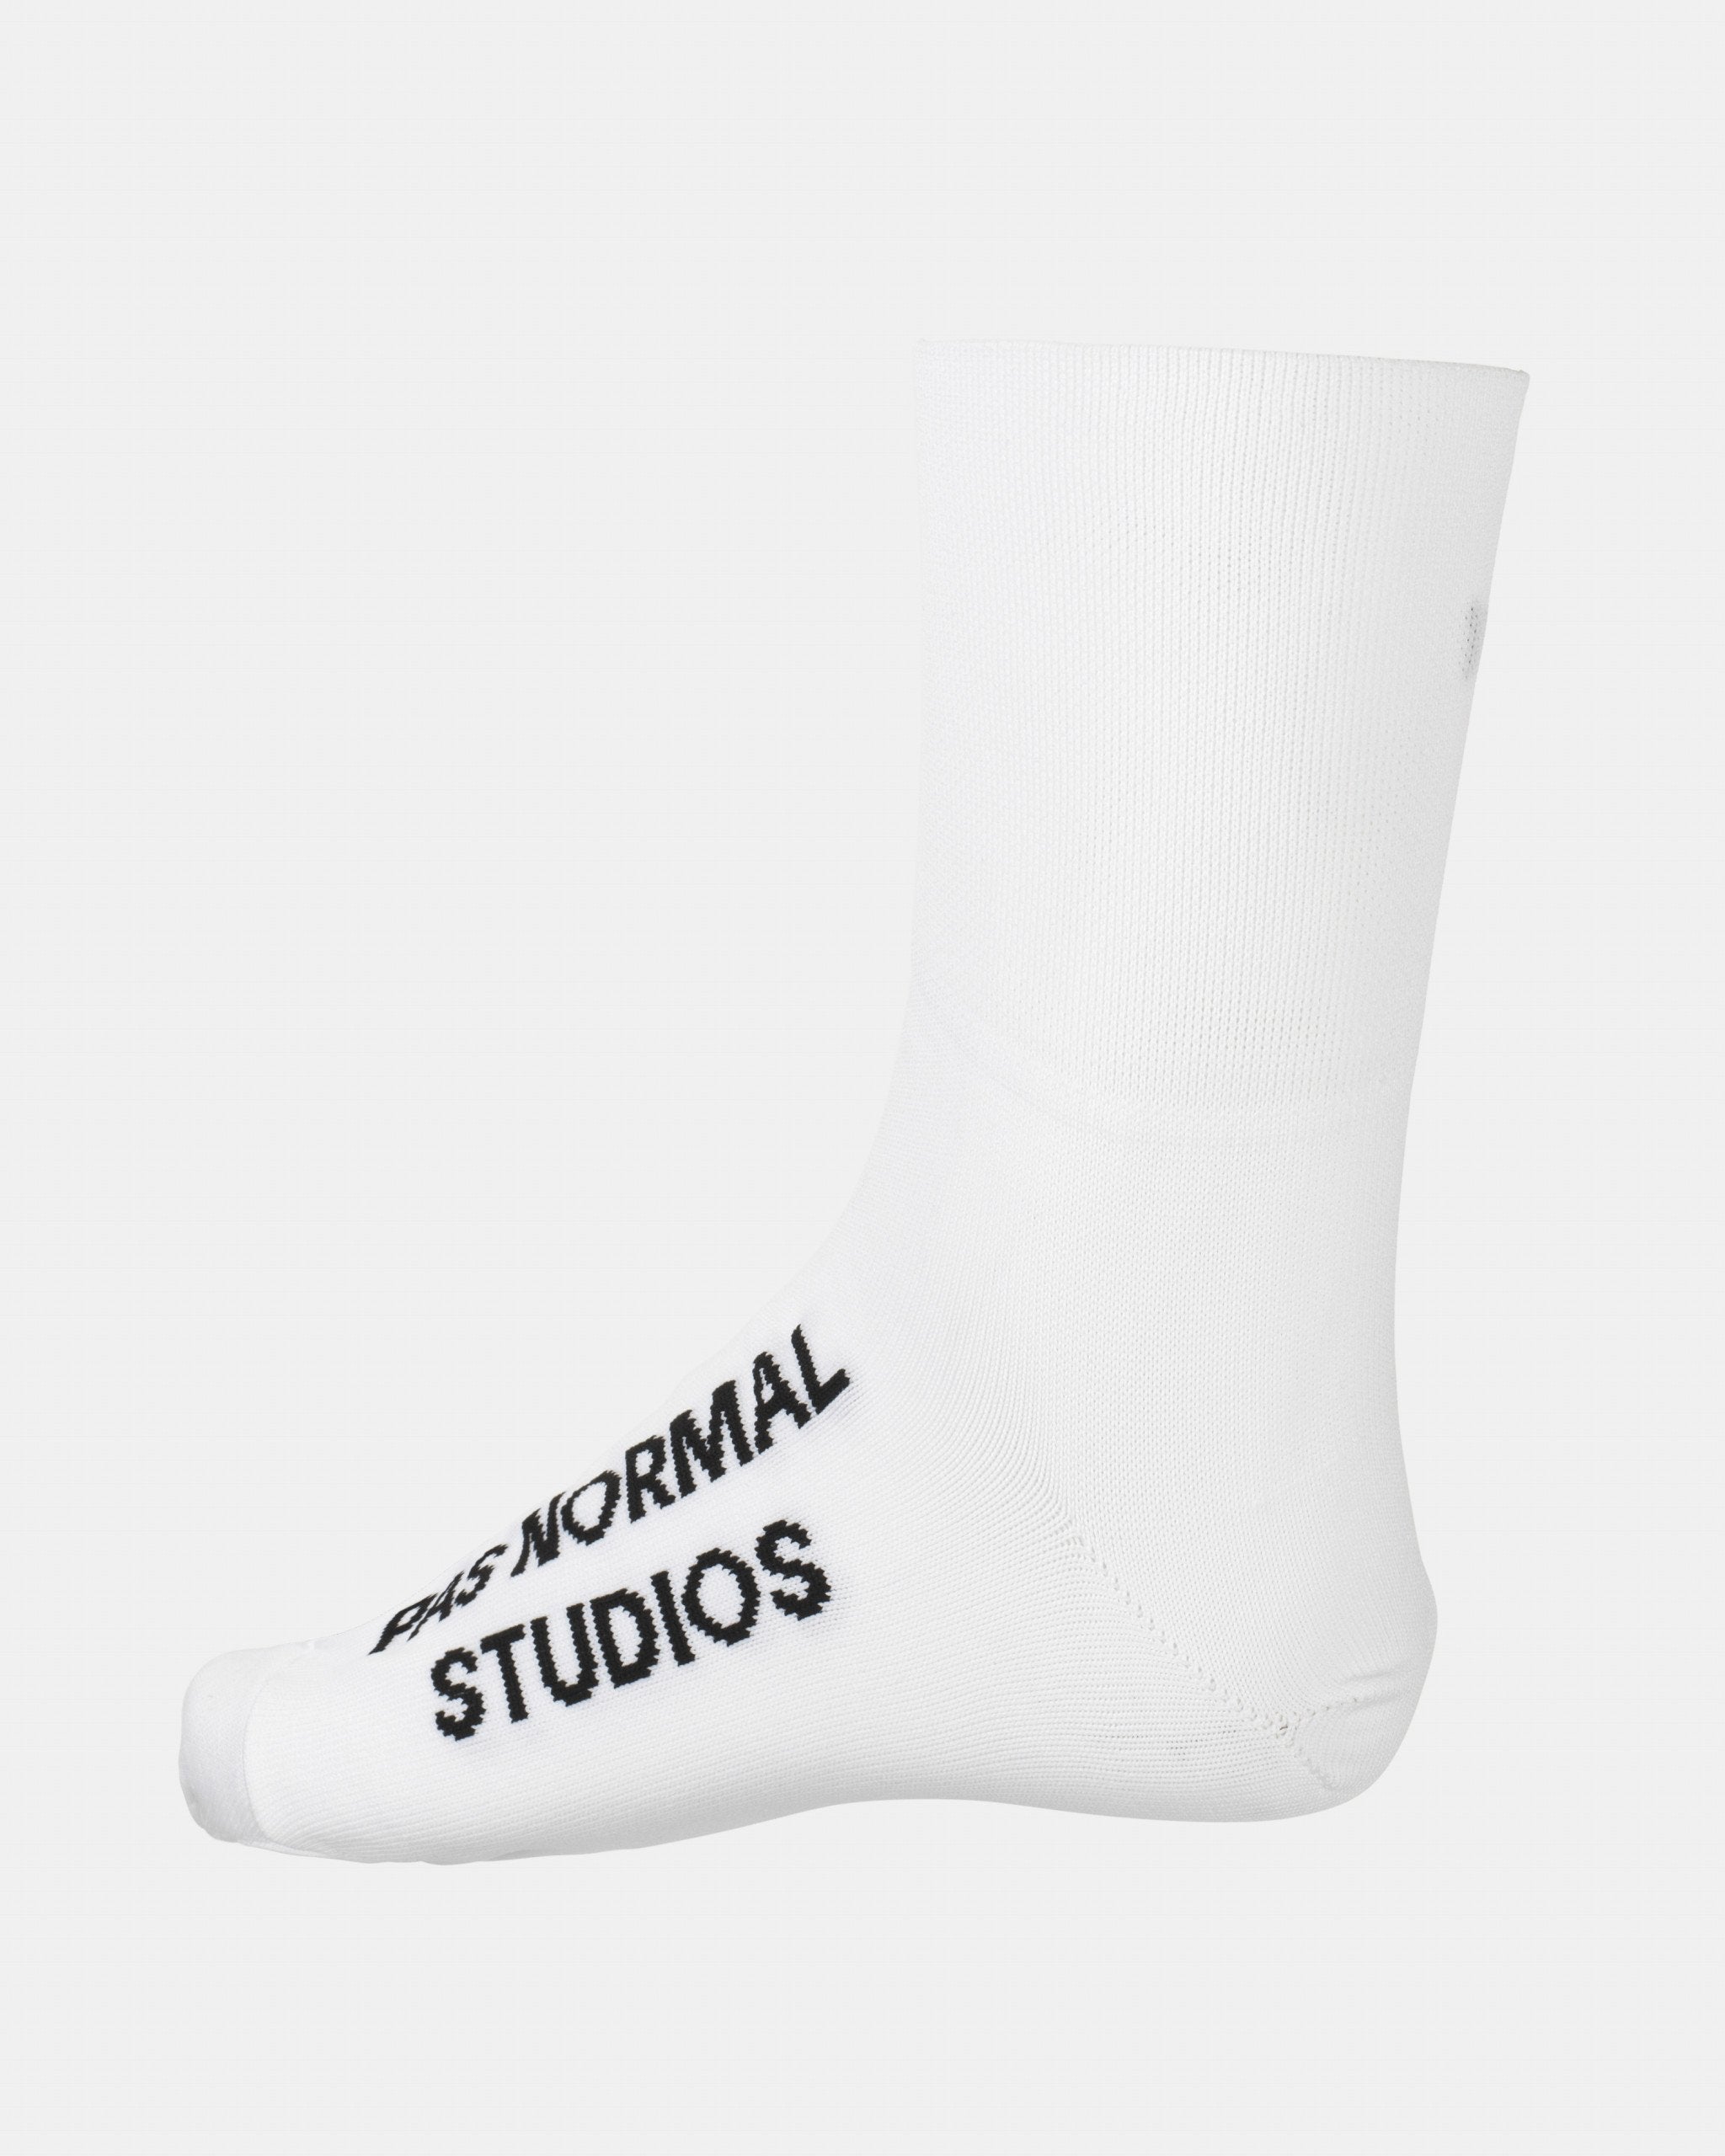 PAS NORMAL STUDIOS Logo Oversocks - White